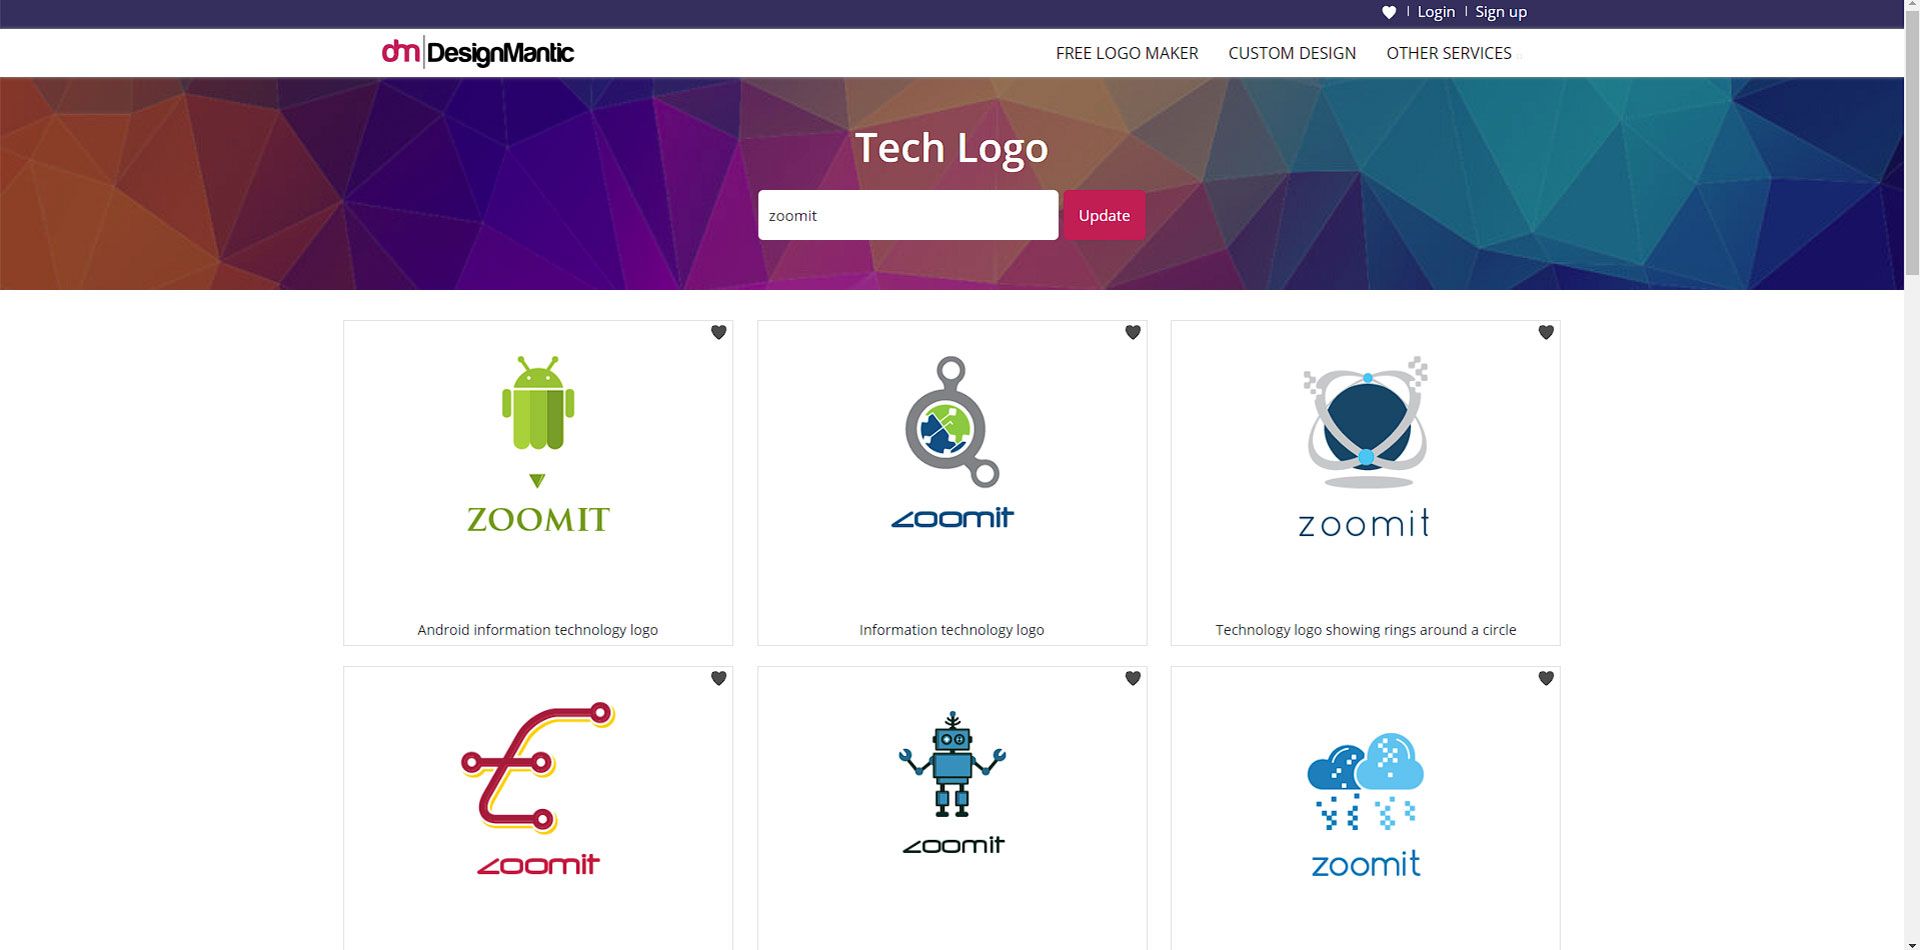 تمپلیت لوگوهای مختلف در سایت designmatic